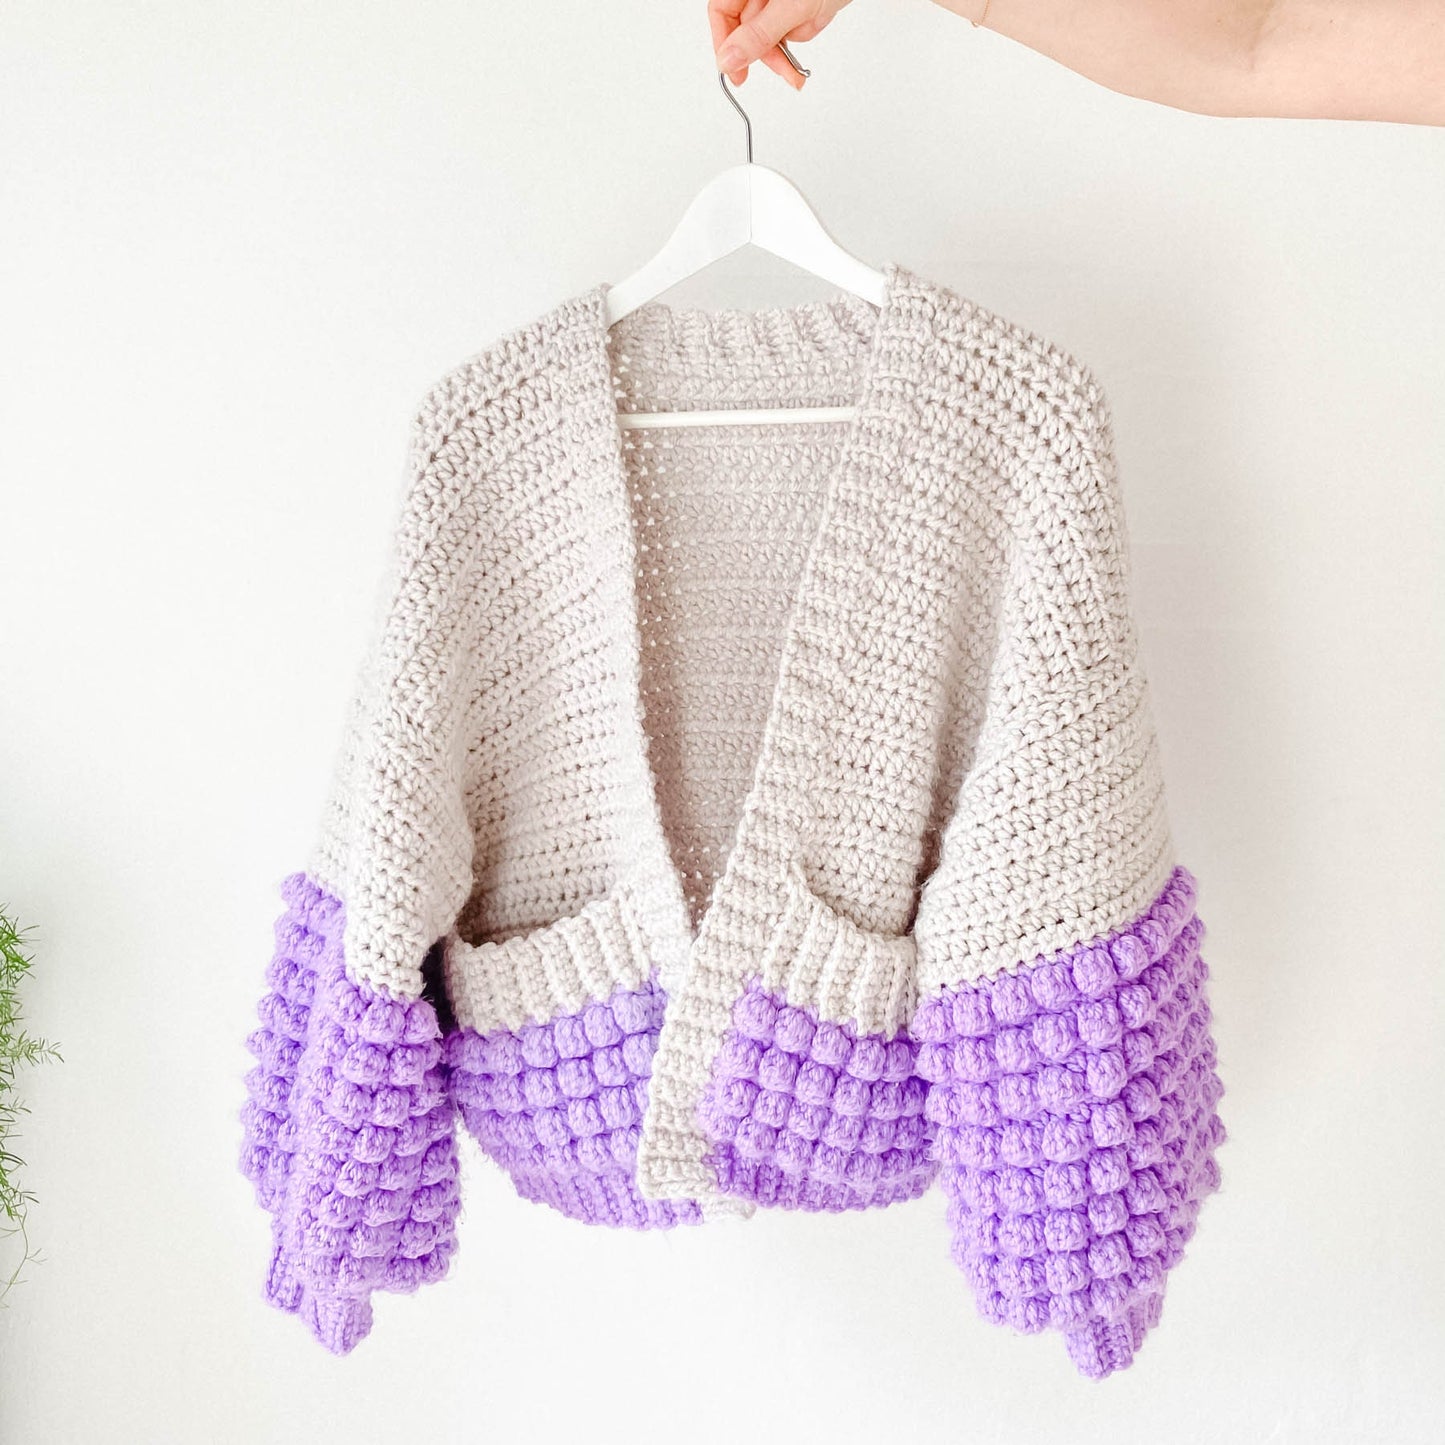 Hubba Bubba Cardi - Crochet Pattern